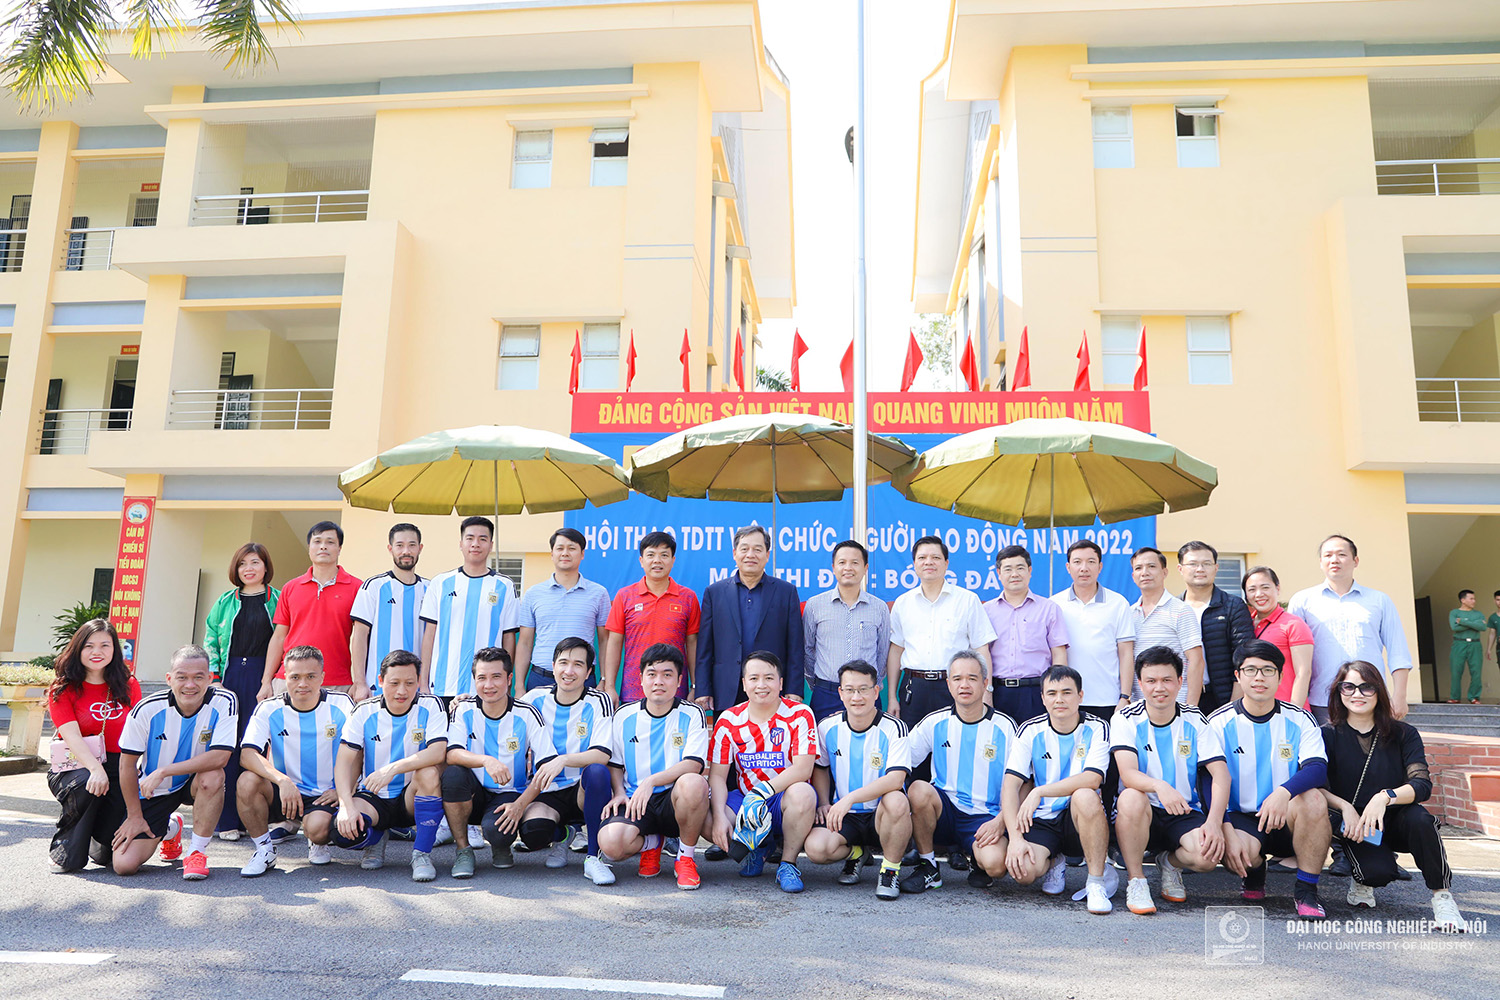 Sôi nổi giải bóng đá viên chức, người lao động Trường Đại học Công nghiệp Hà Nội